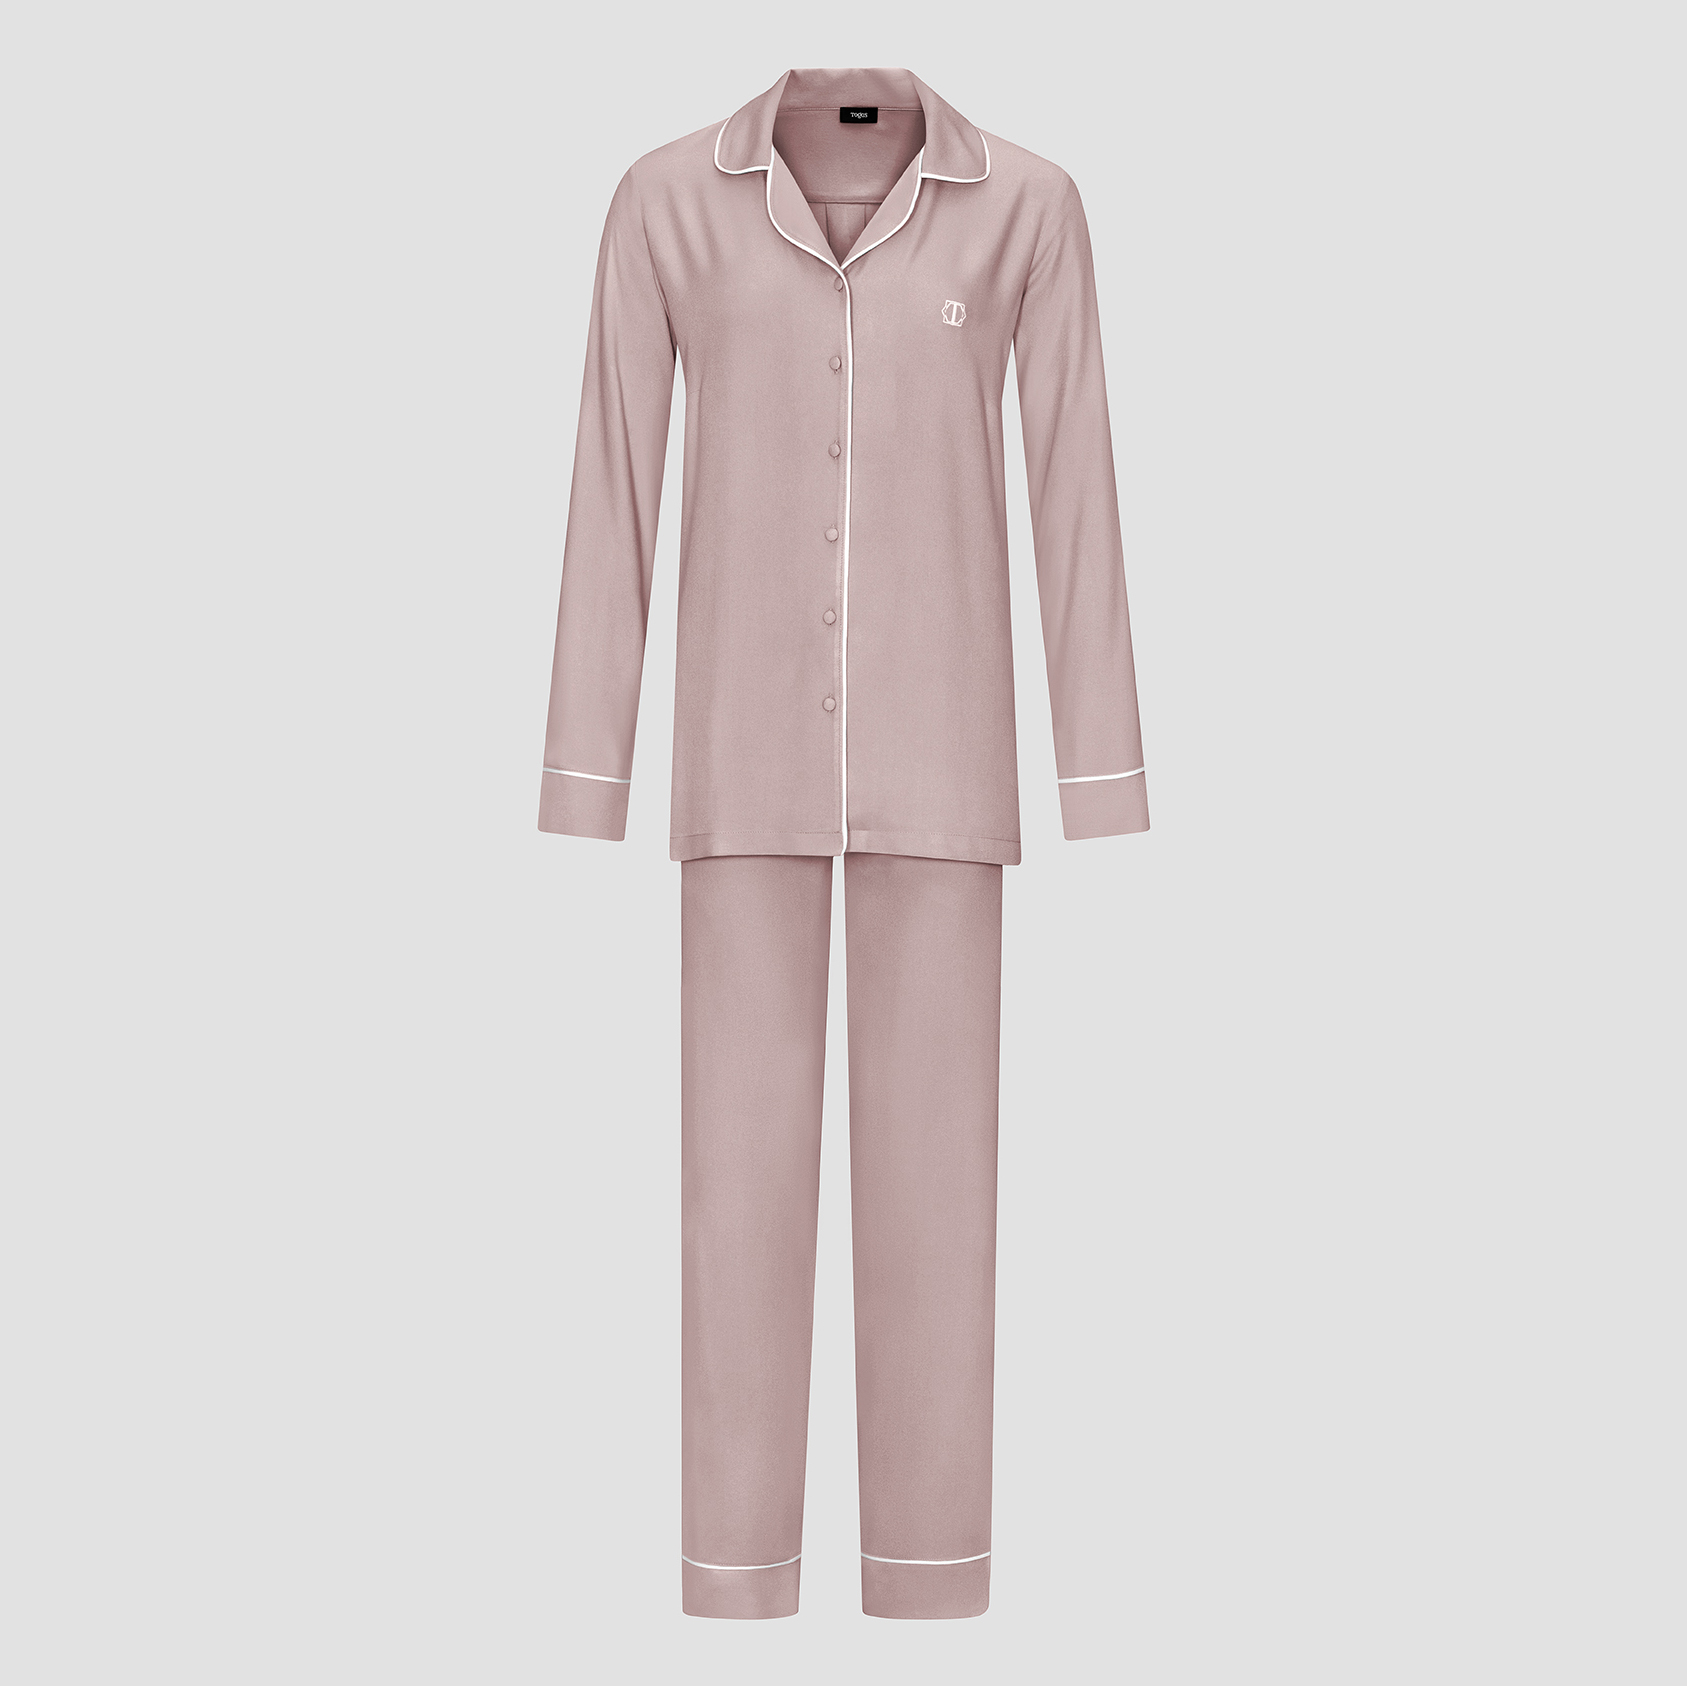 Пижама женская Togas Рамель розовая 2 предмета пижама сорочка брюки